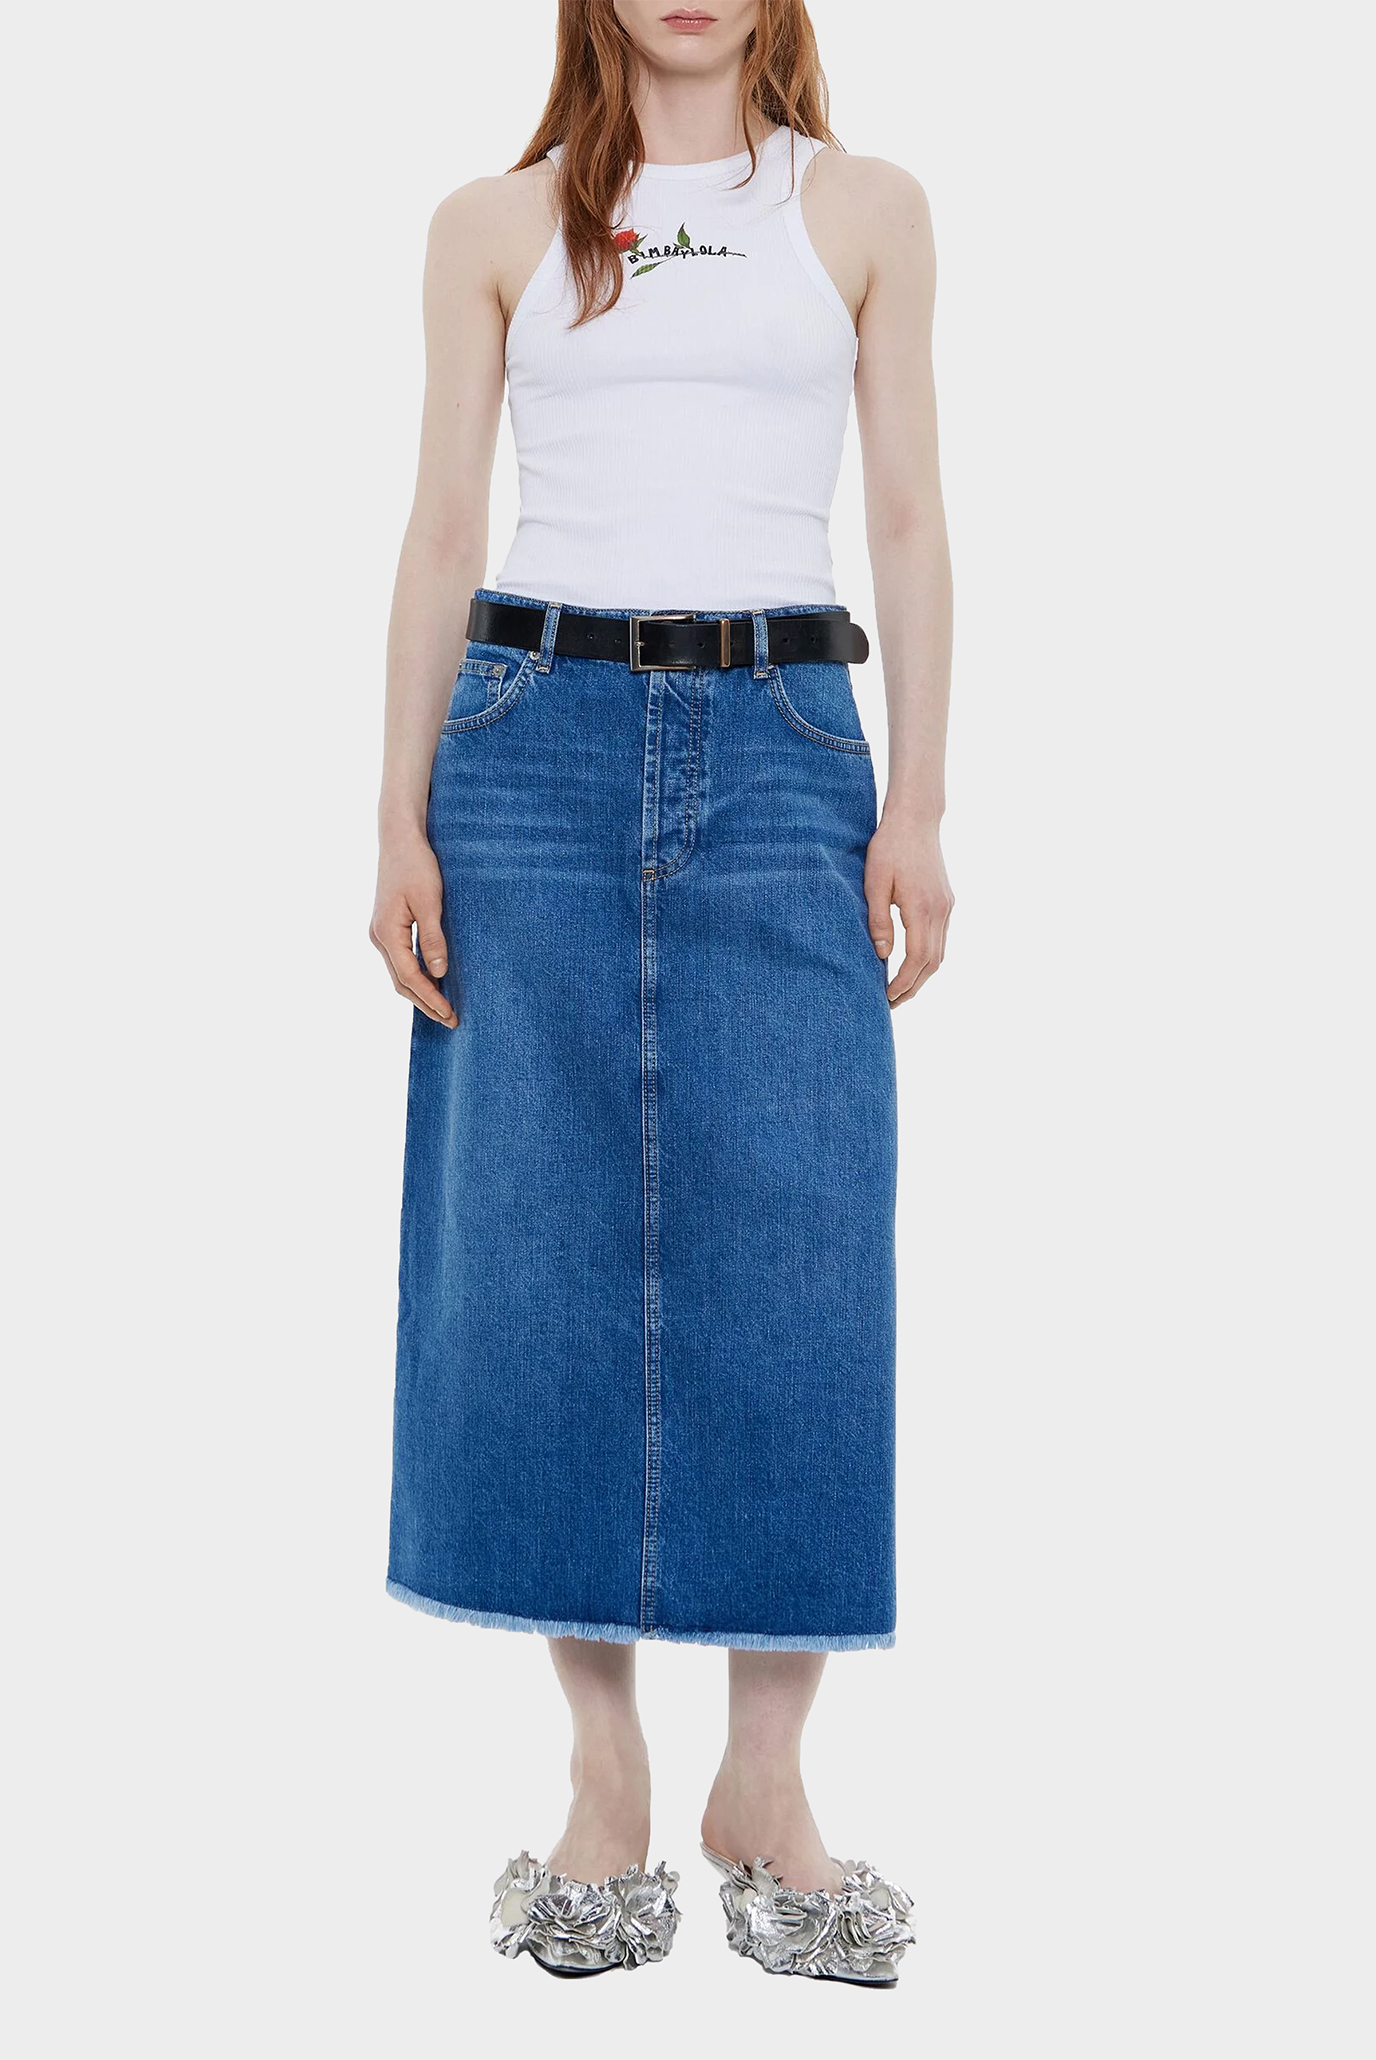 Женская синяя джинсовая юбка 1